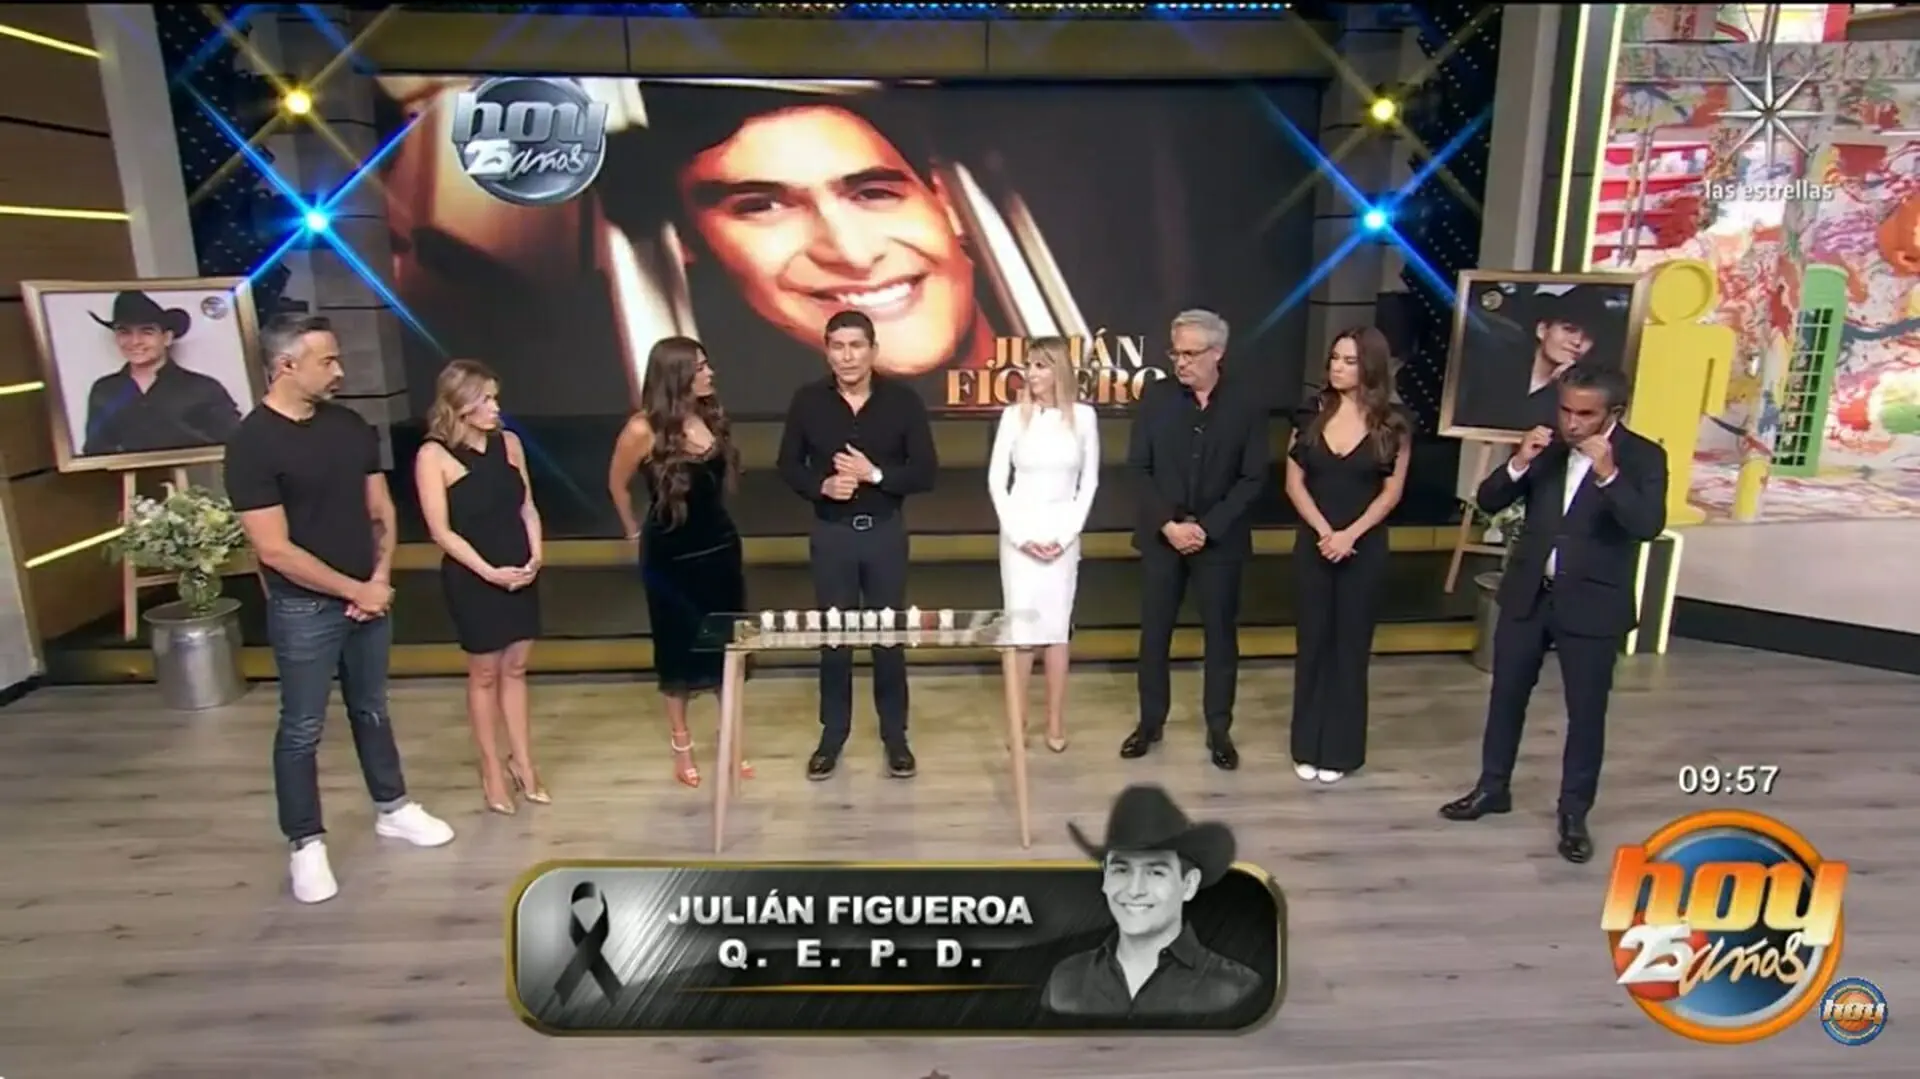 Apresentadores do programa Hoy abriram a programação da Televisa com notícia trágica (Reprodução: Televisa)